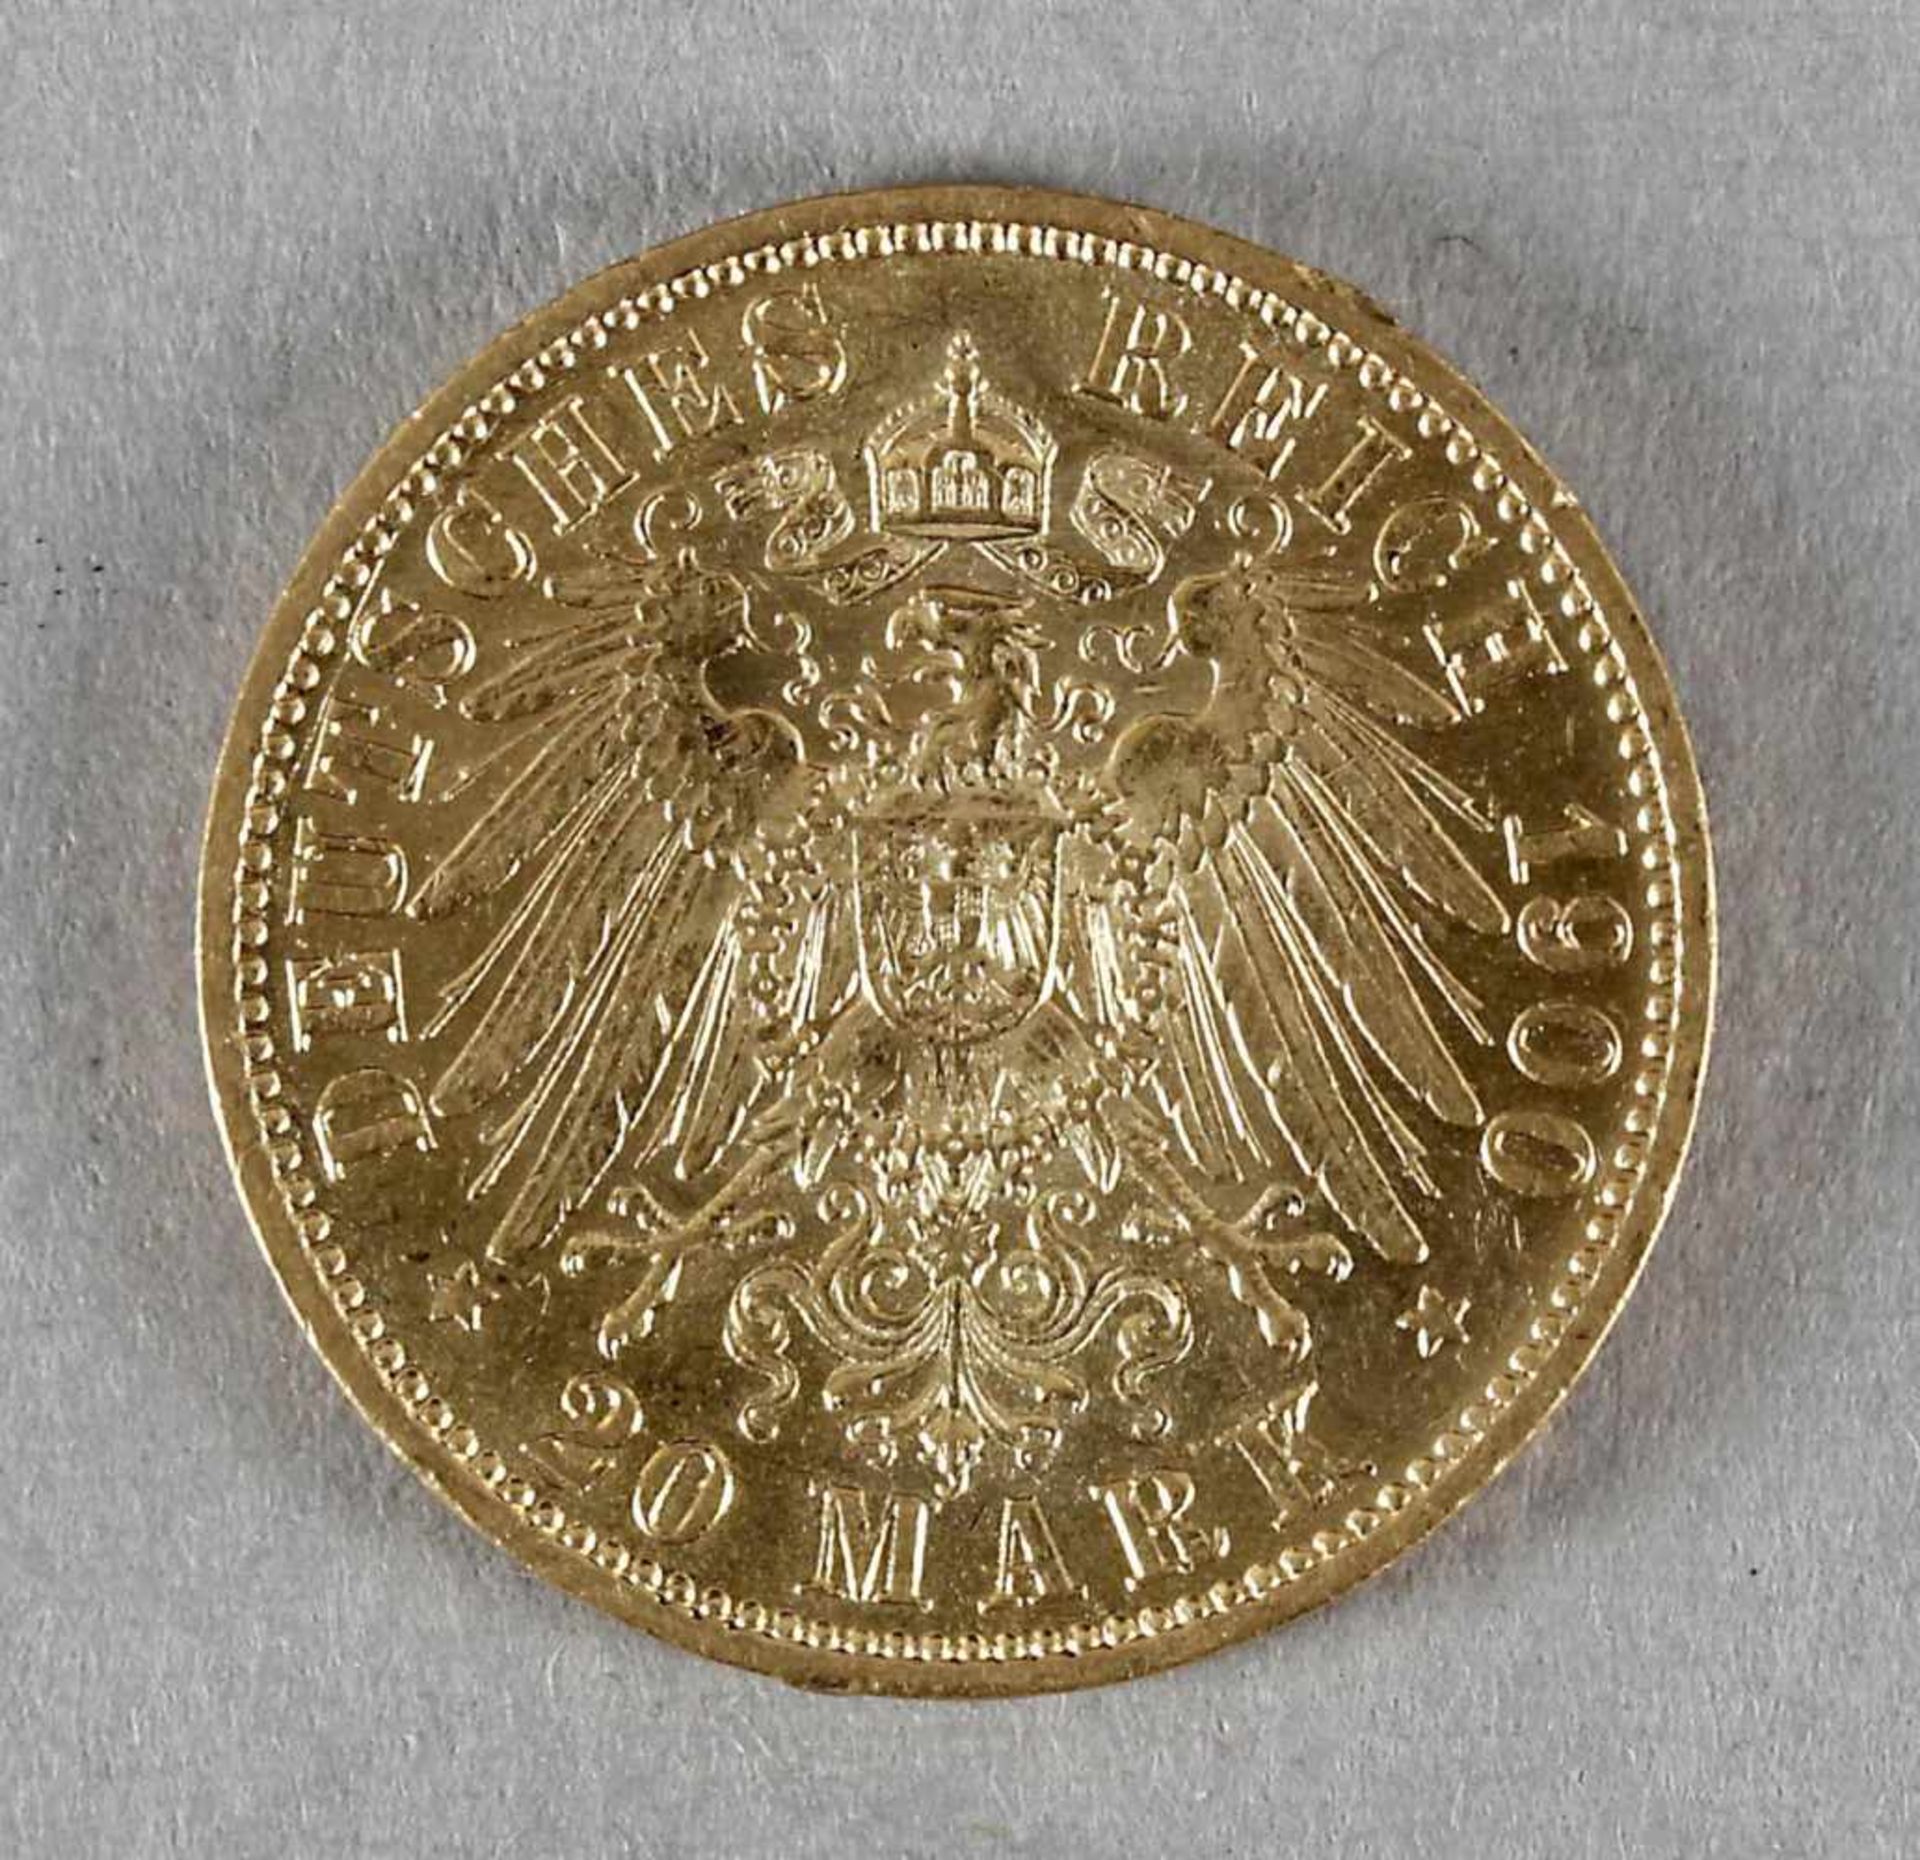 Goldmünze, 20 Mark, Wilhelm II. von Preußen, 1900 A - Bild 2 aus 2